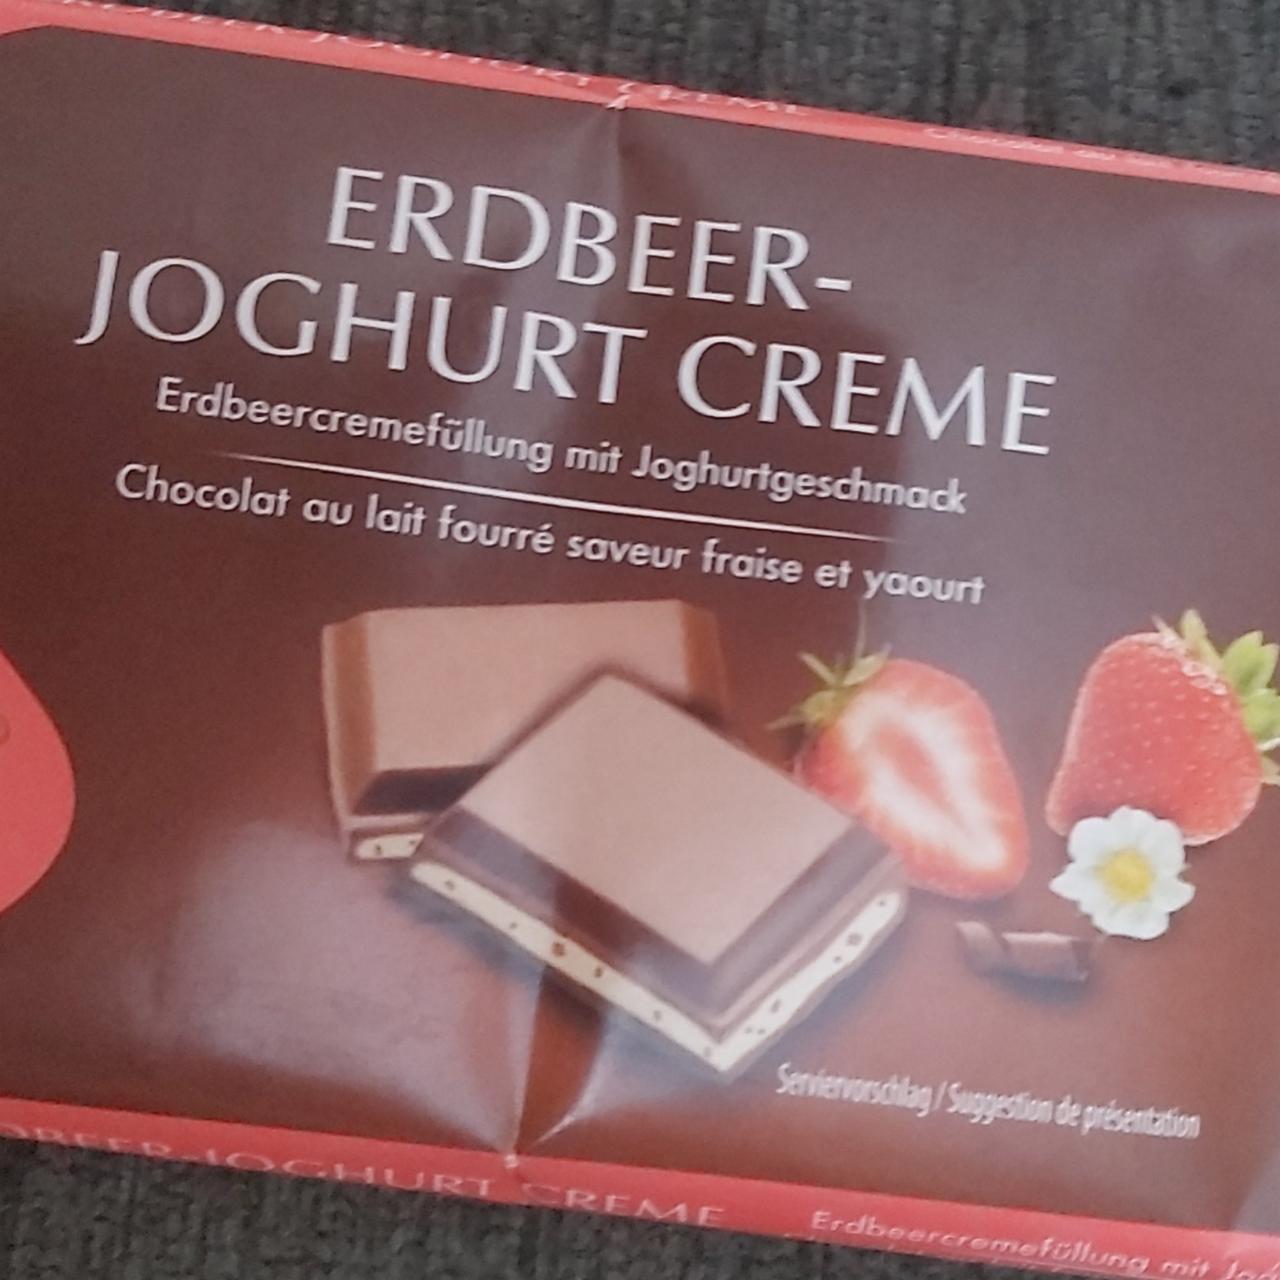 Fotografie - Erdbeer-joghurt creme